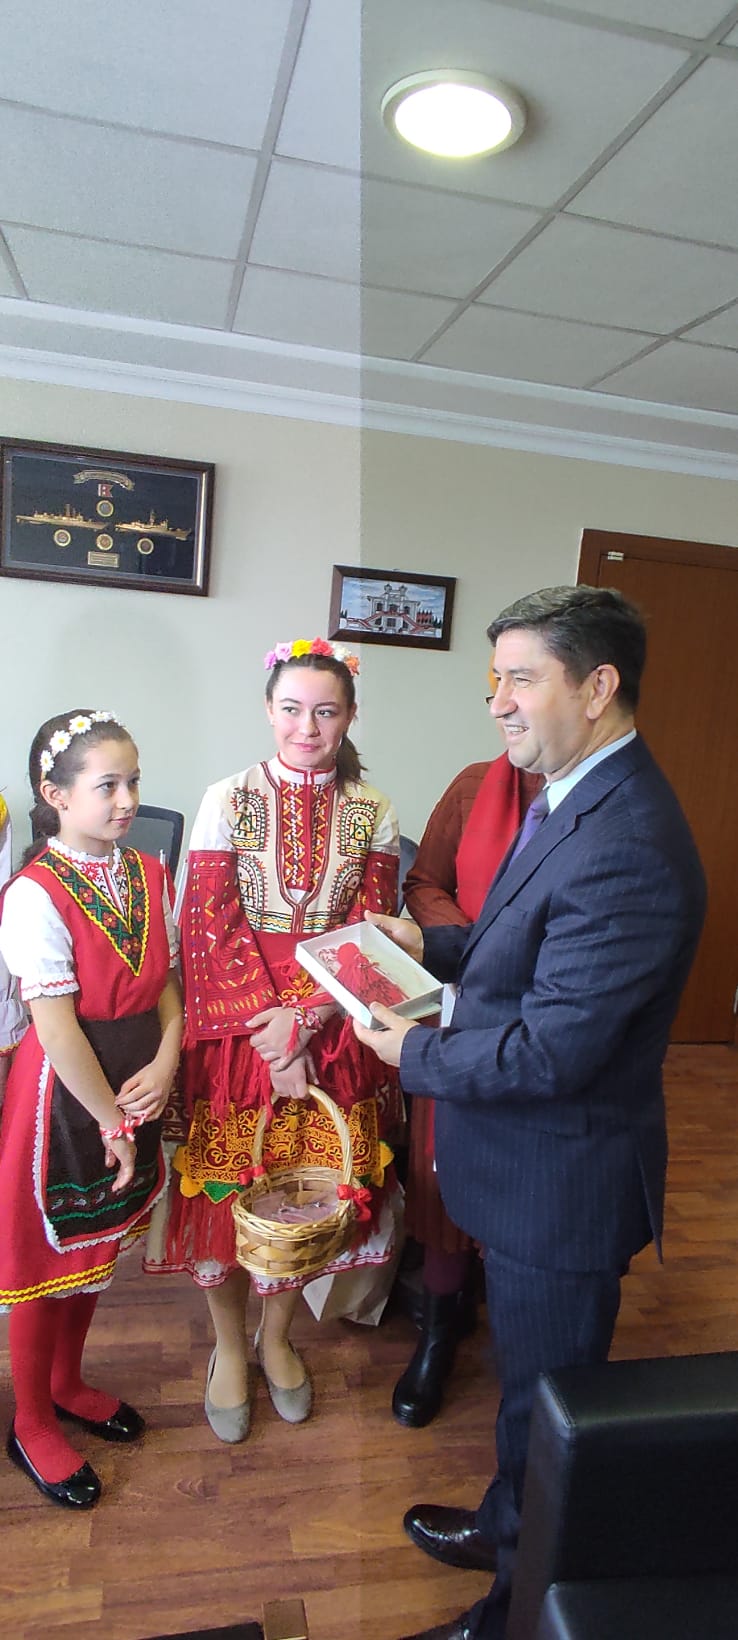 Деца и учители от Българското неделно училище „Св. св. Кирил и Методий“ към Генералното консулство посетиха Областната администрация на Истанбул и Истанбулска голяма община